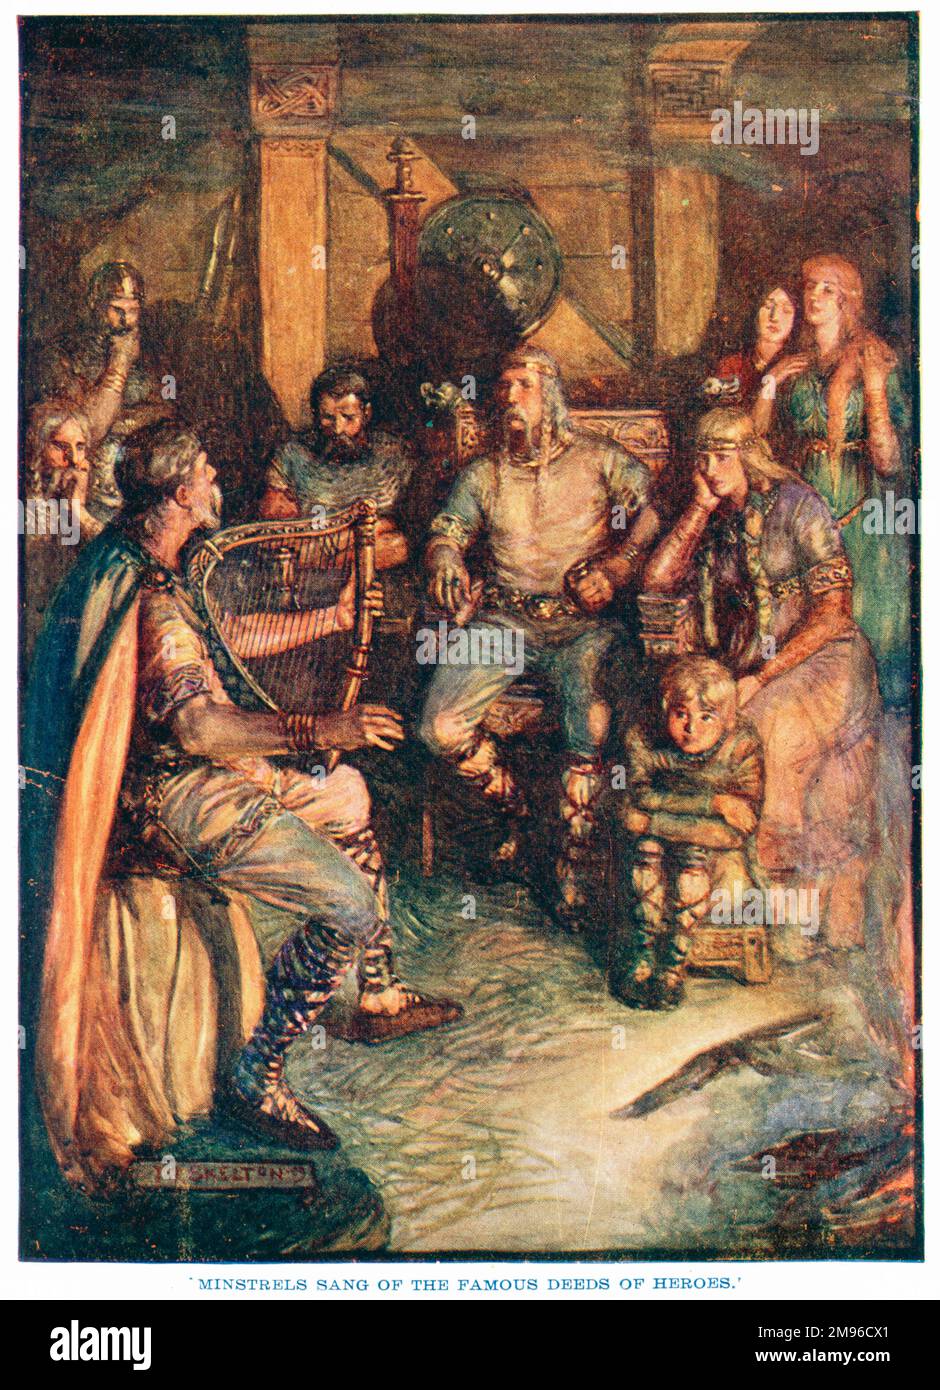 "Minstrels sangen von den berühmten Taten der Helden." Ein mittelalterliches Minstrel mit einer keltischen Harfe singt Geschichten für ein reizendes Publikum von Männern, Frauen und Kindern. Stockfoto